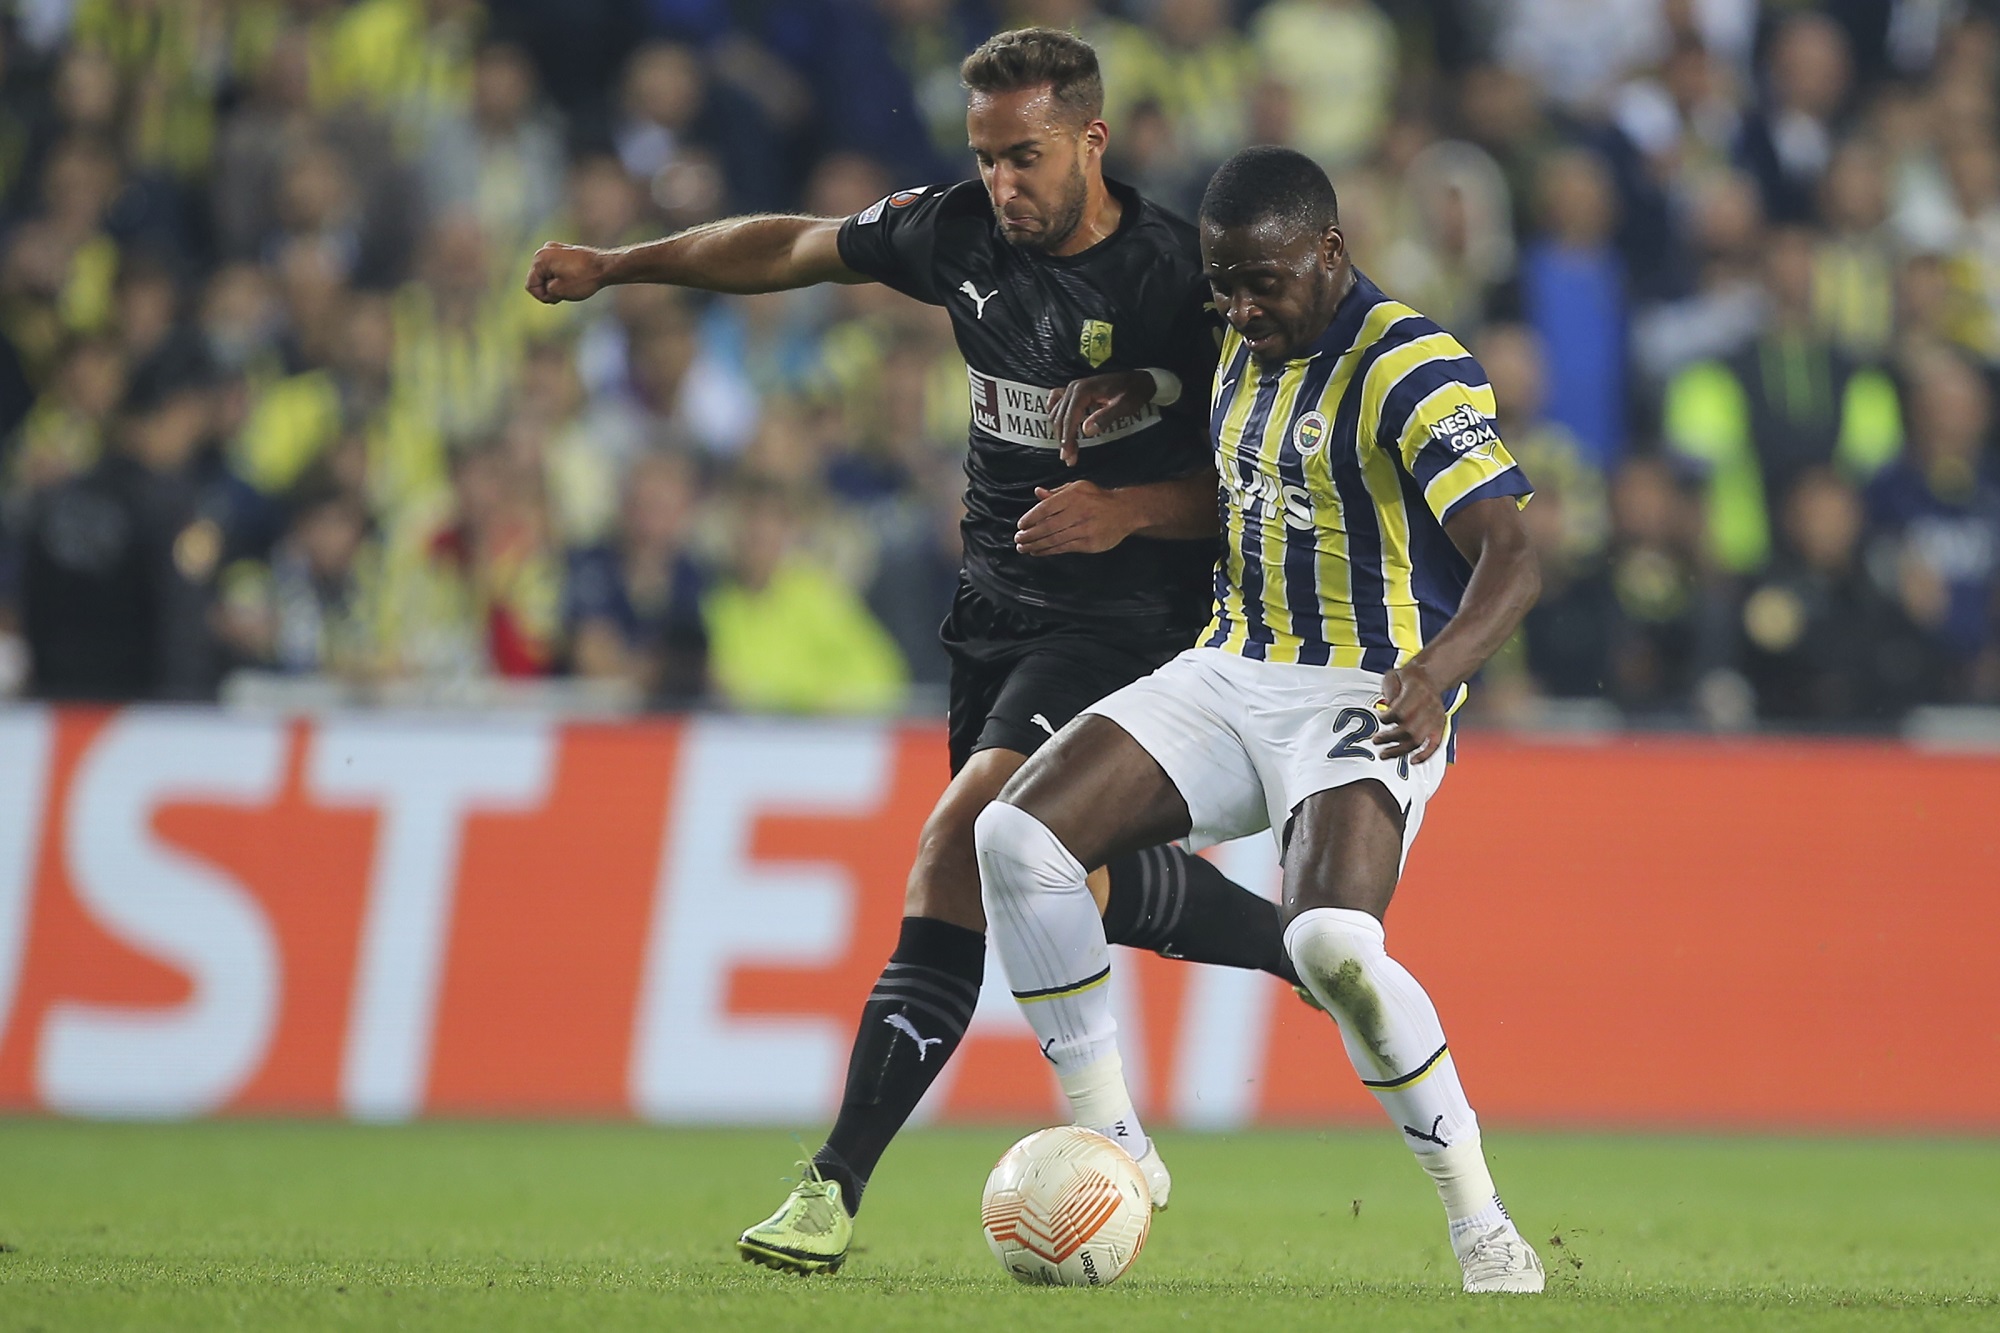 Κύπρος: Δρακόντεια μέτρα ασφαλείας για τον αποψινό αγώνα της ΑΕΚ Λάρνακας με την Fenerbahçe για το Europa League